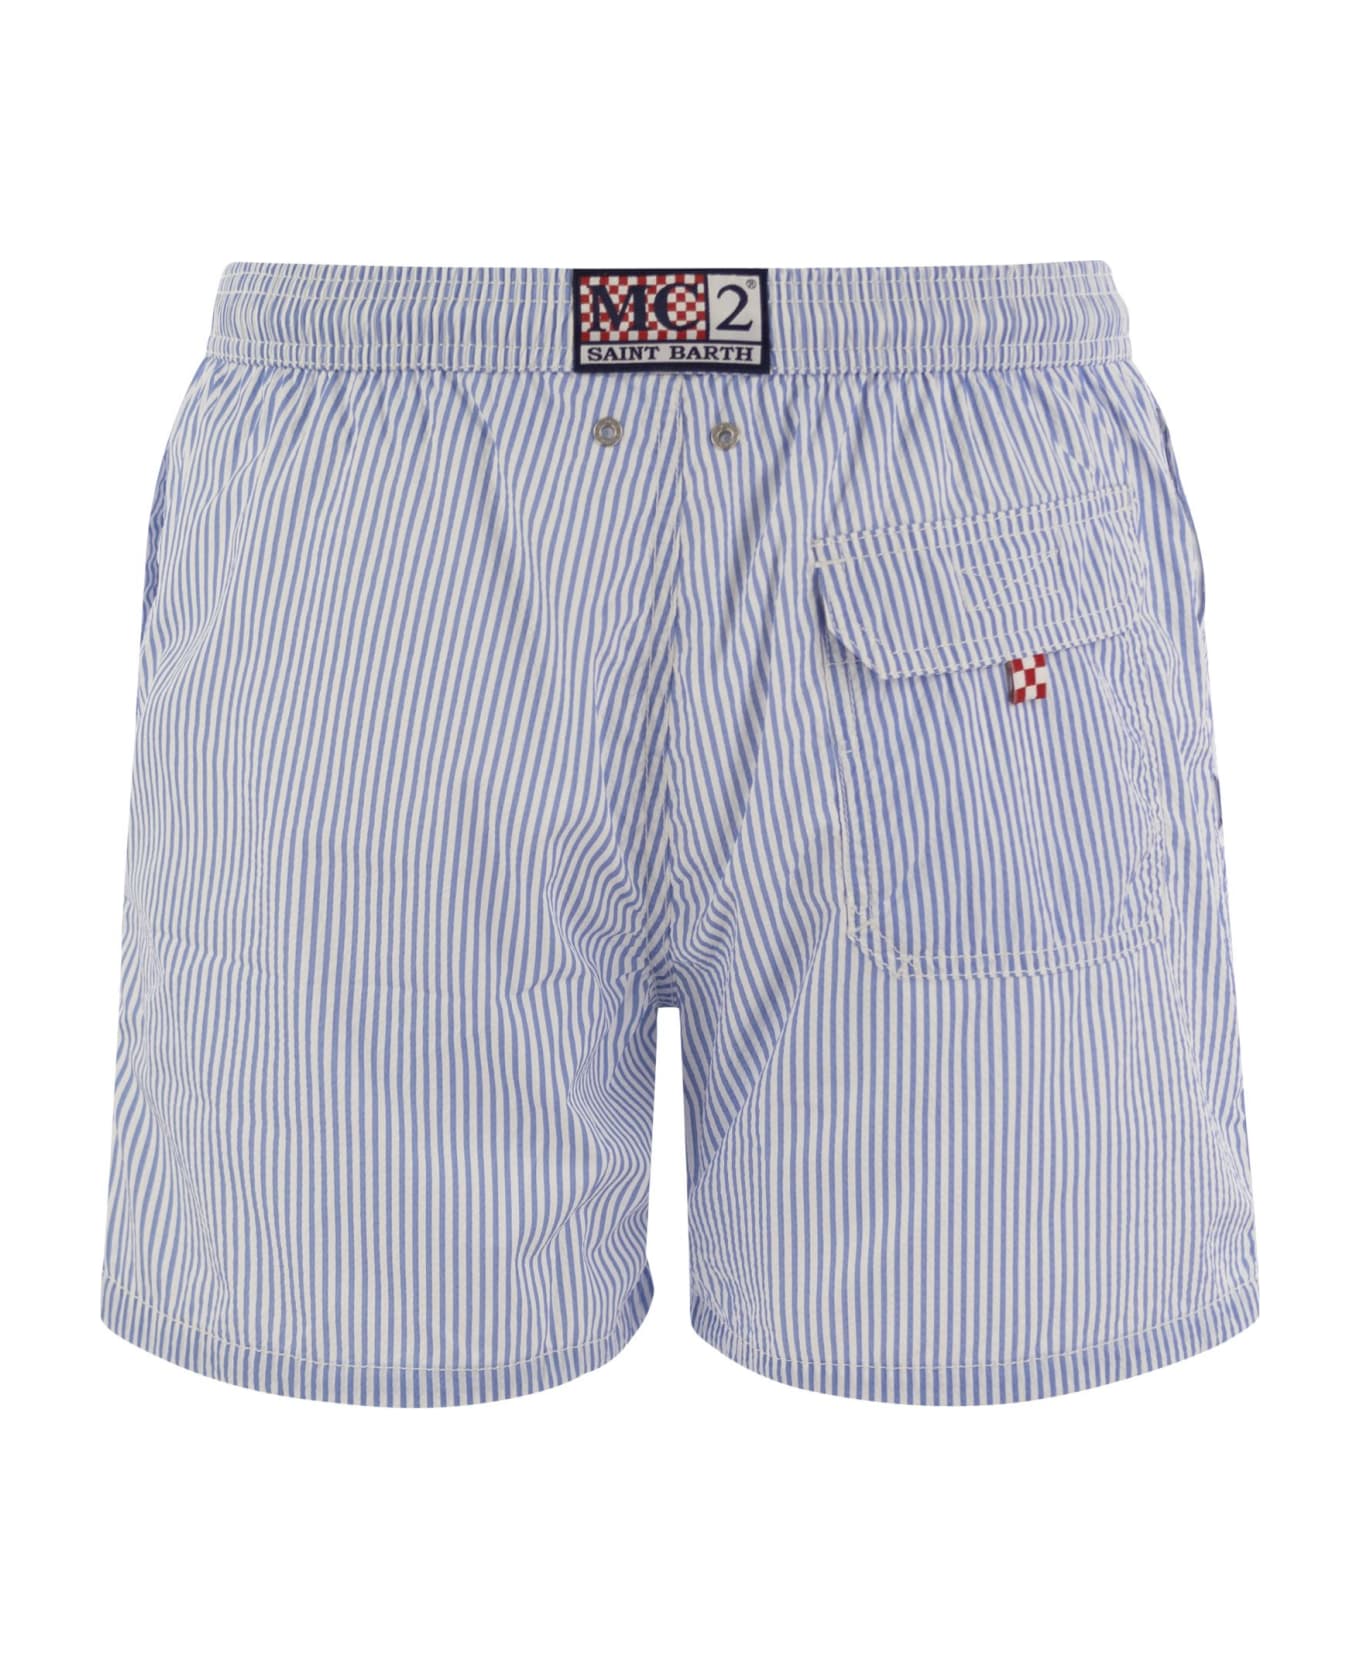 MC2 Saint Barth Patmos - Striped Beach Shorts - White/blue 水着